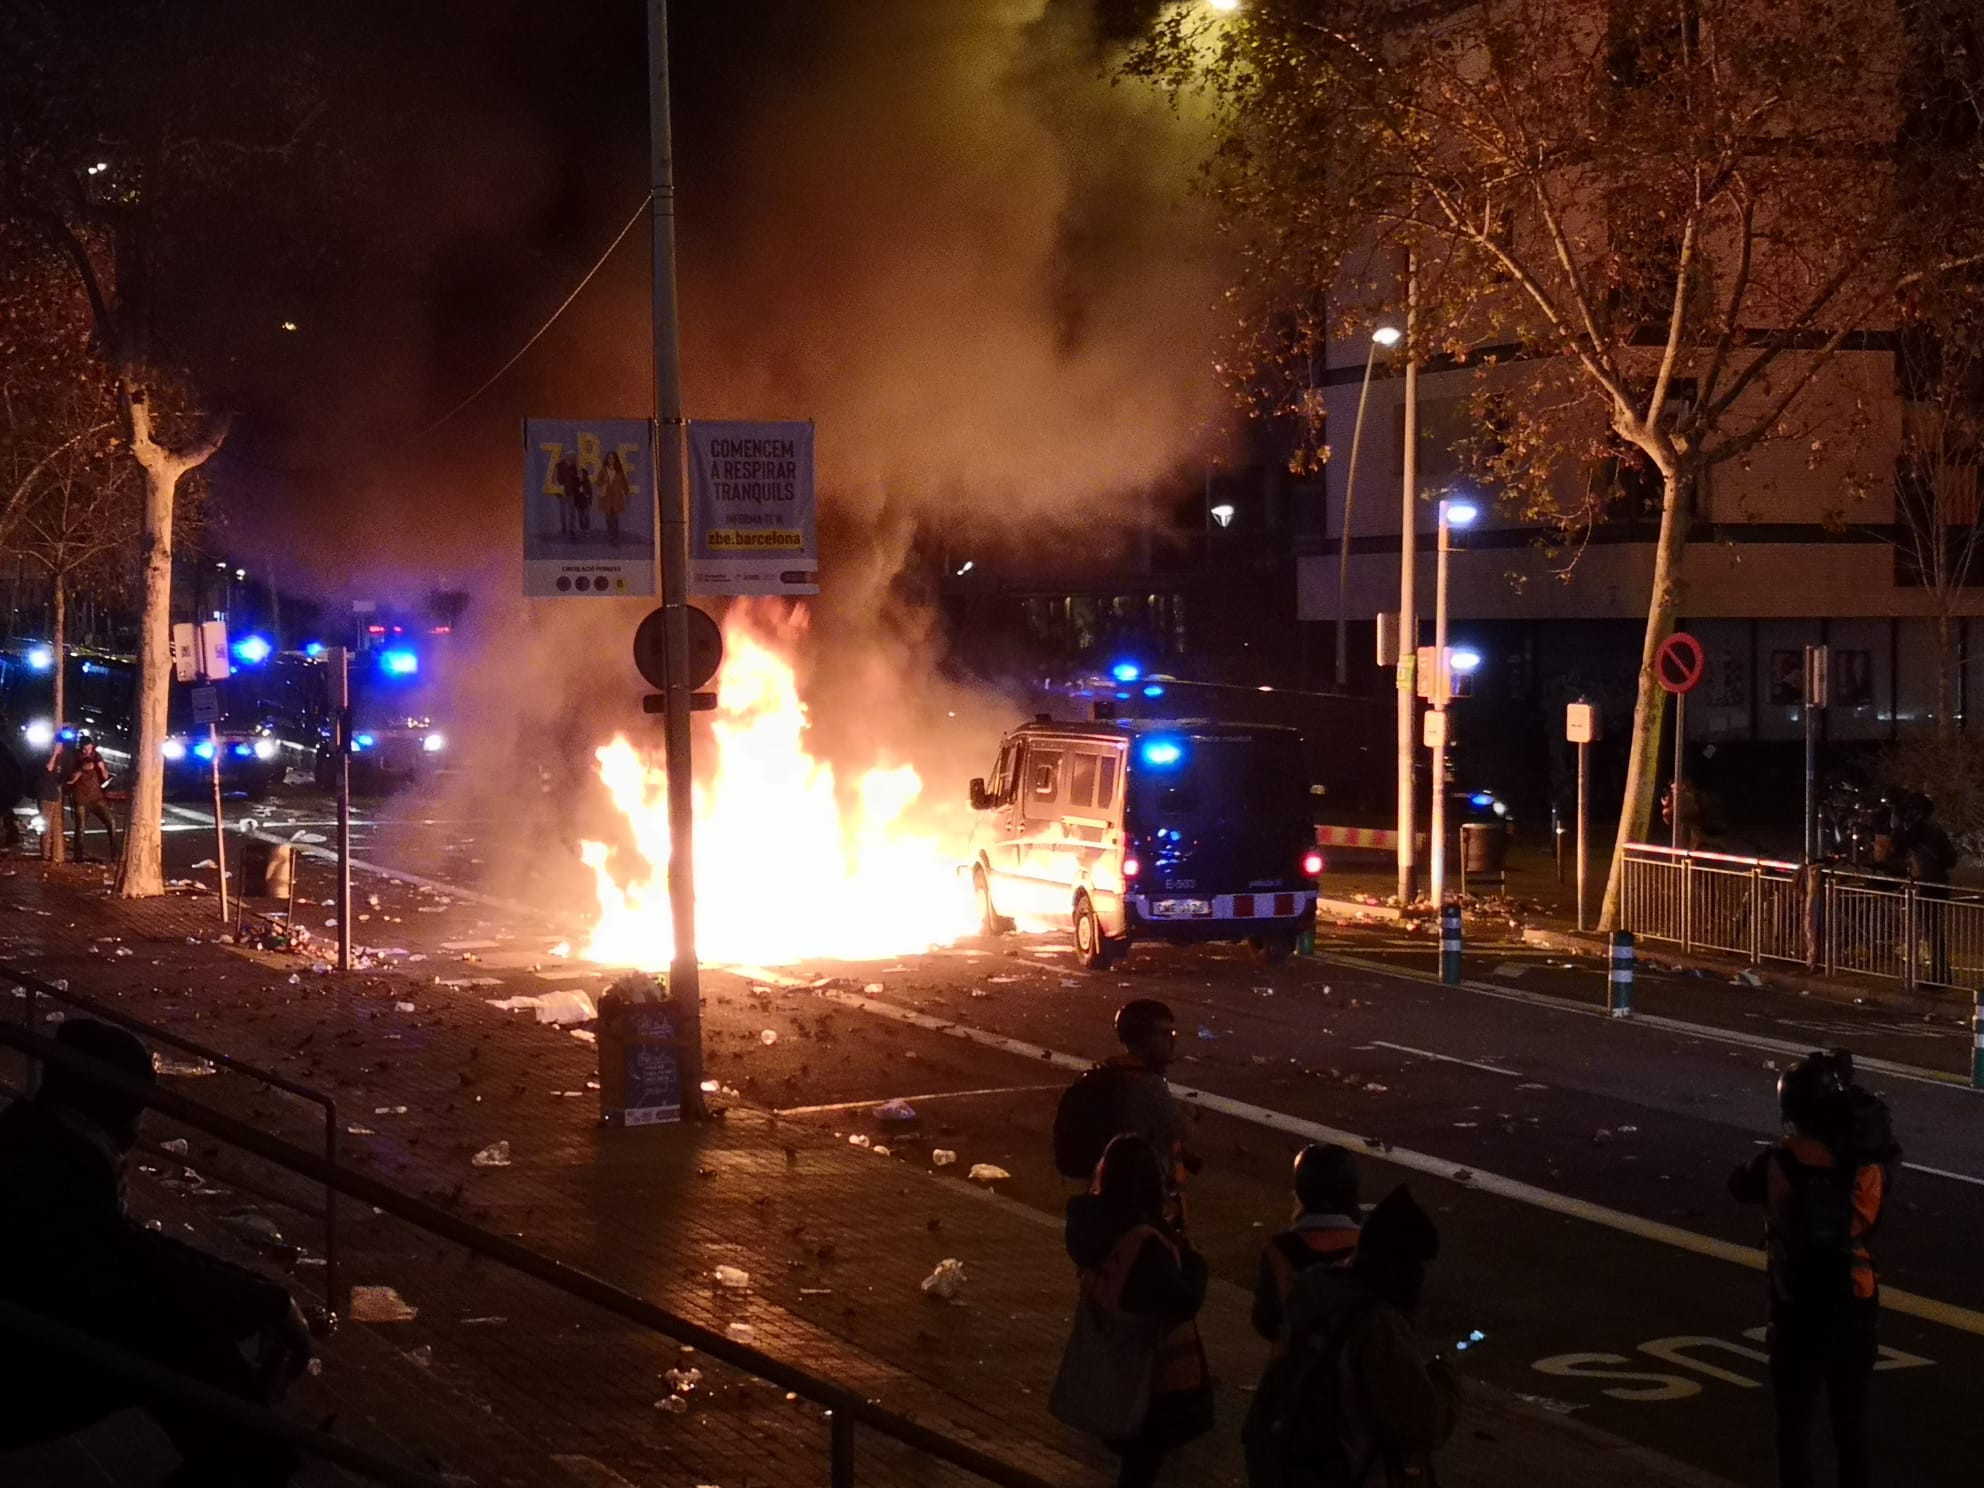 Furgoneta de los Mossos delante de una barricada ardiendo en las inmediaciones del Camp Nou / G.A